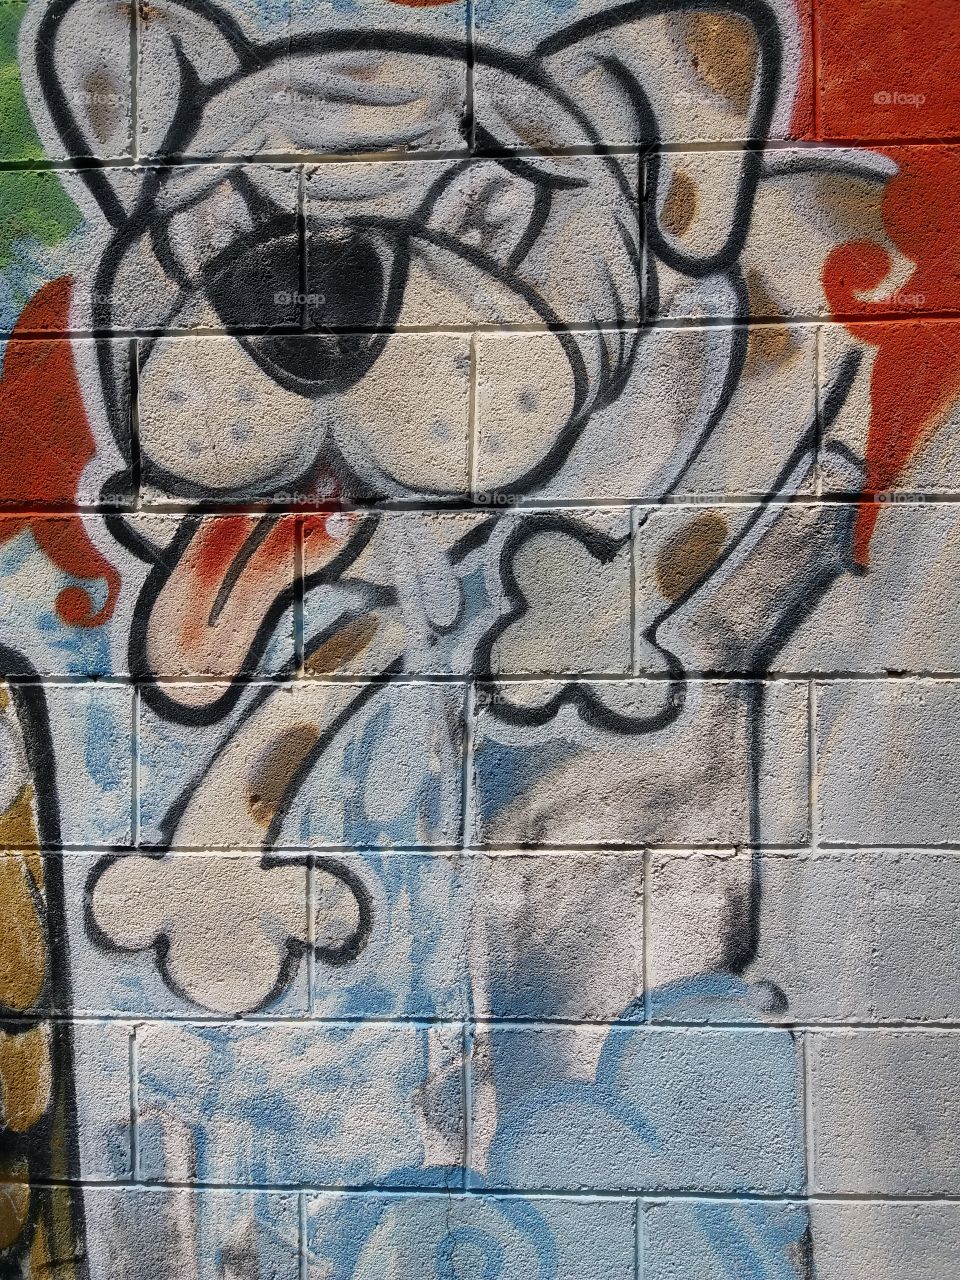 dog spraying art at the wall